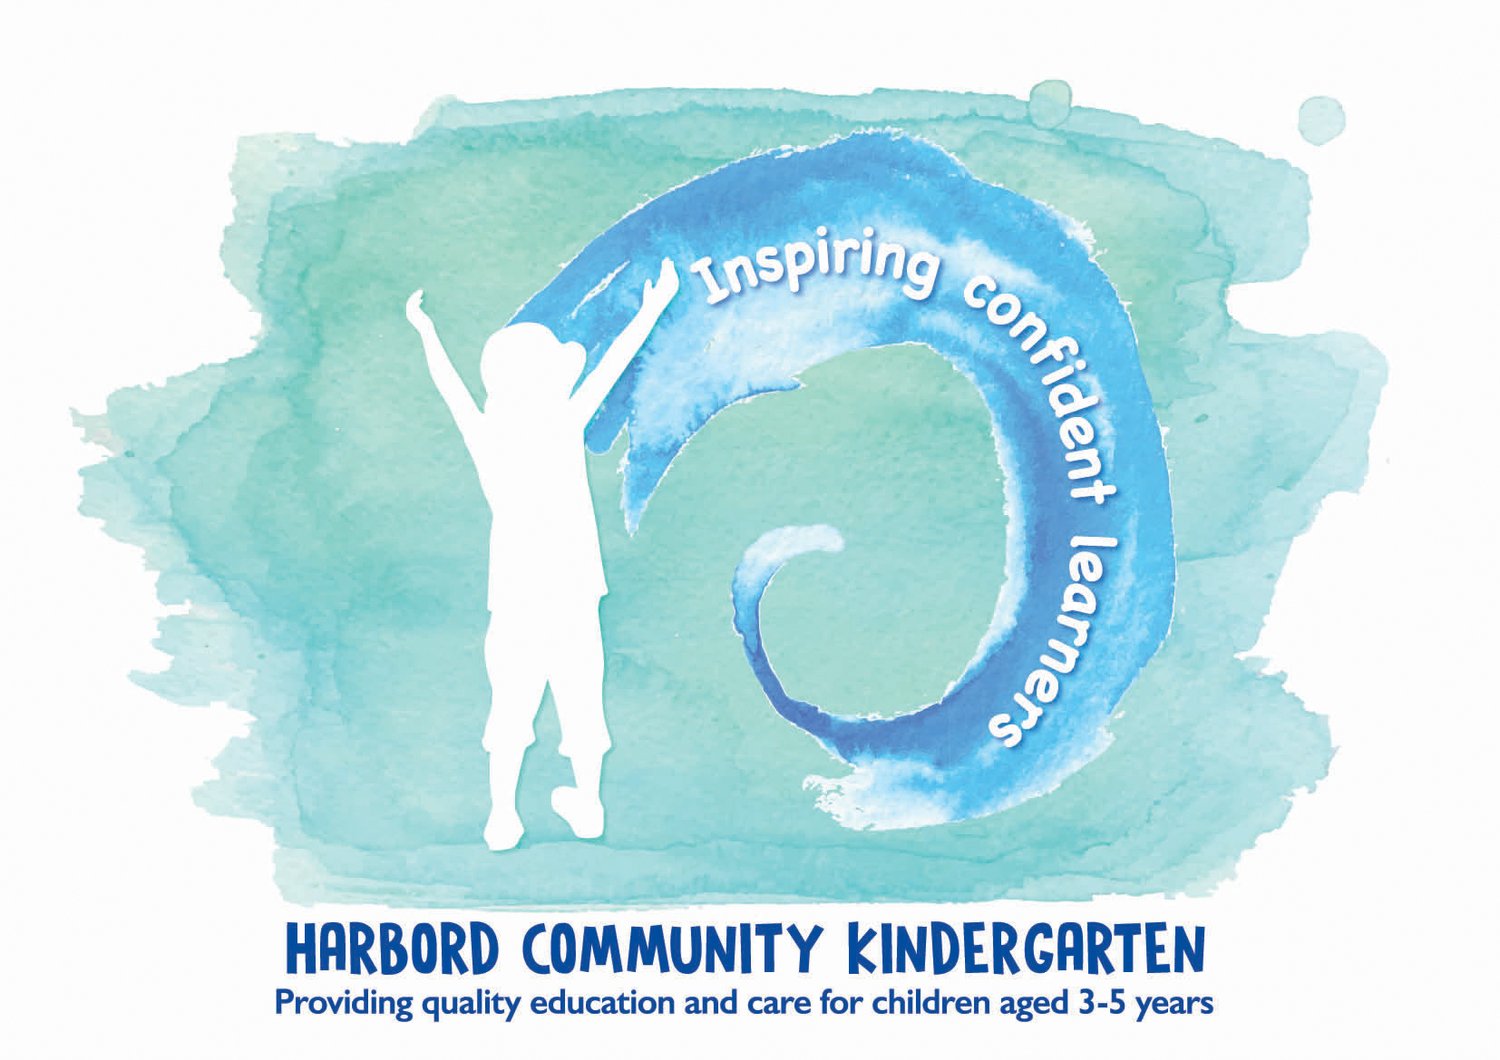 Harbord Community Kindergarten